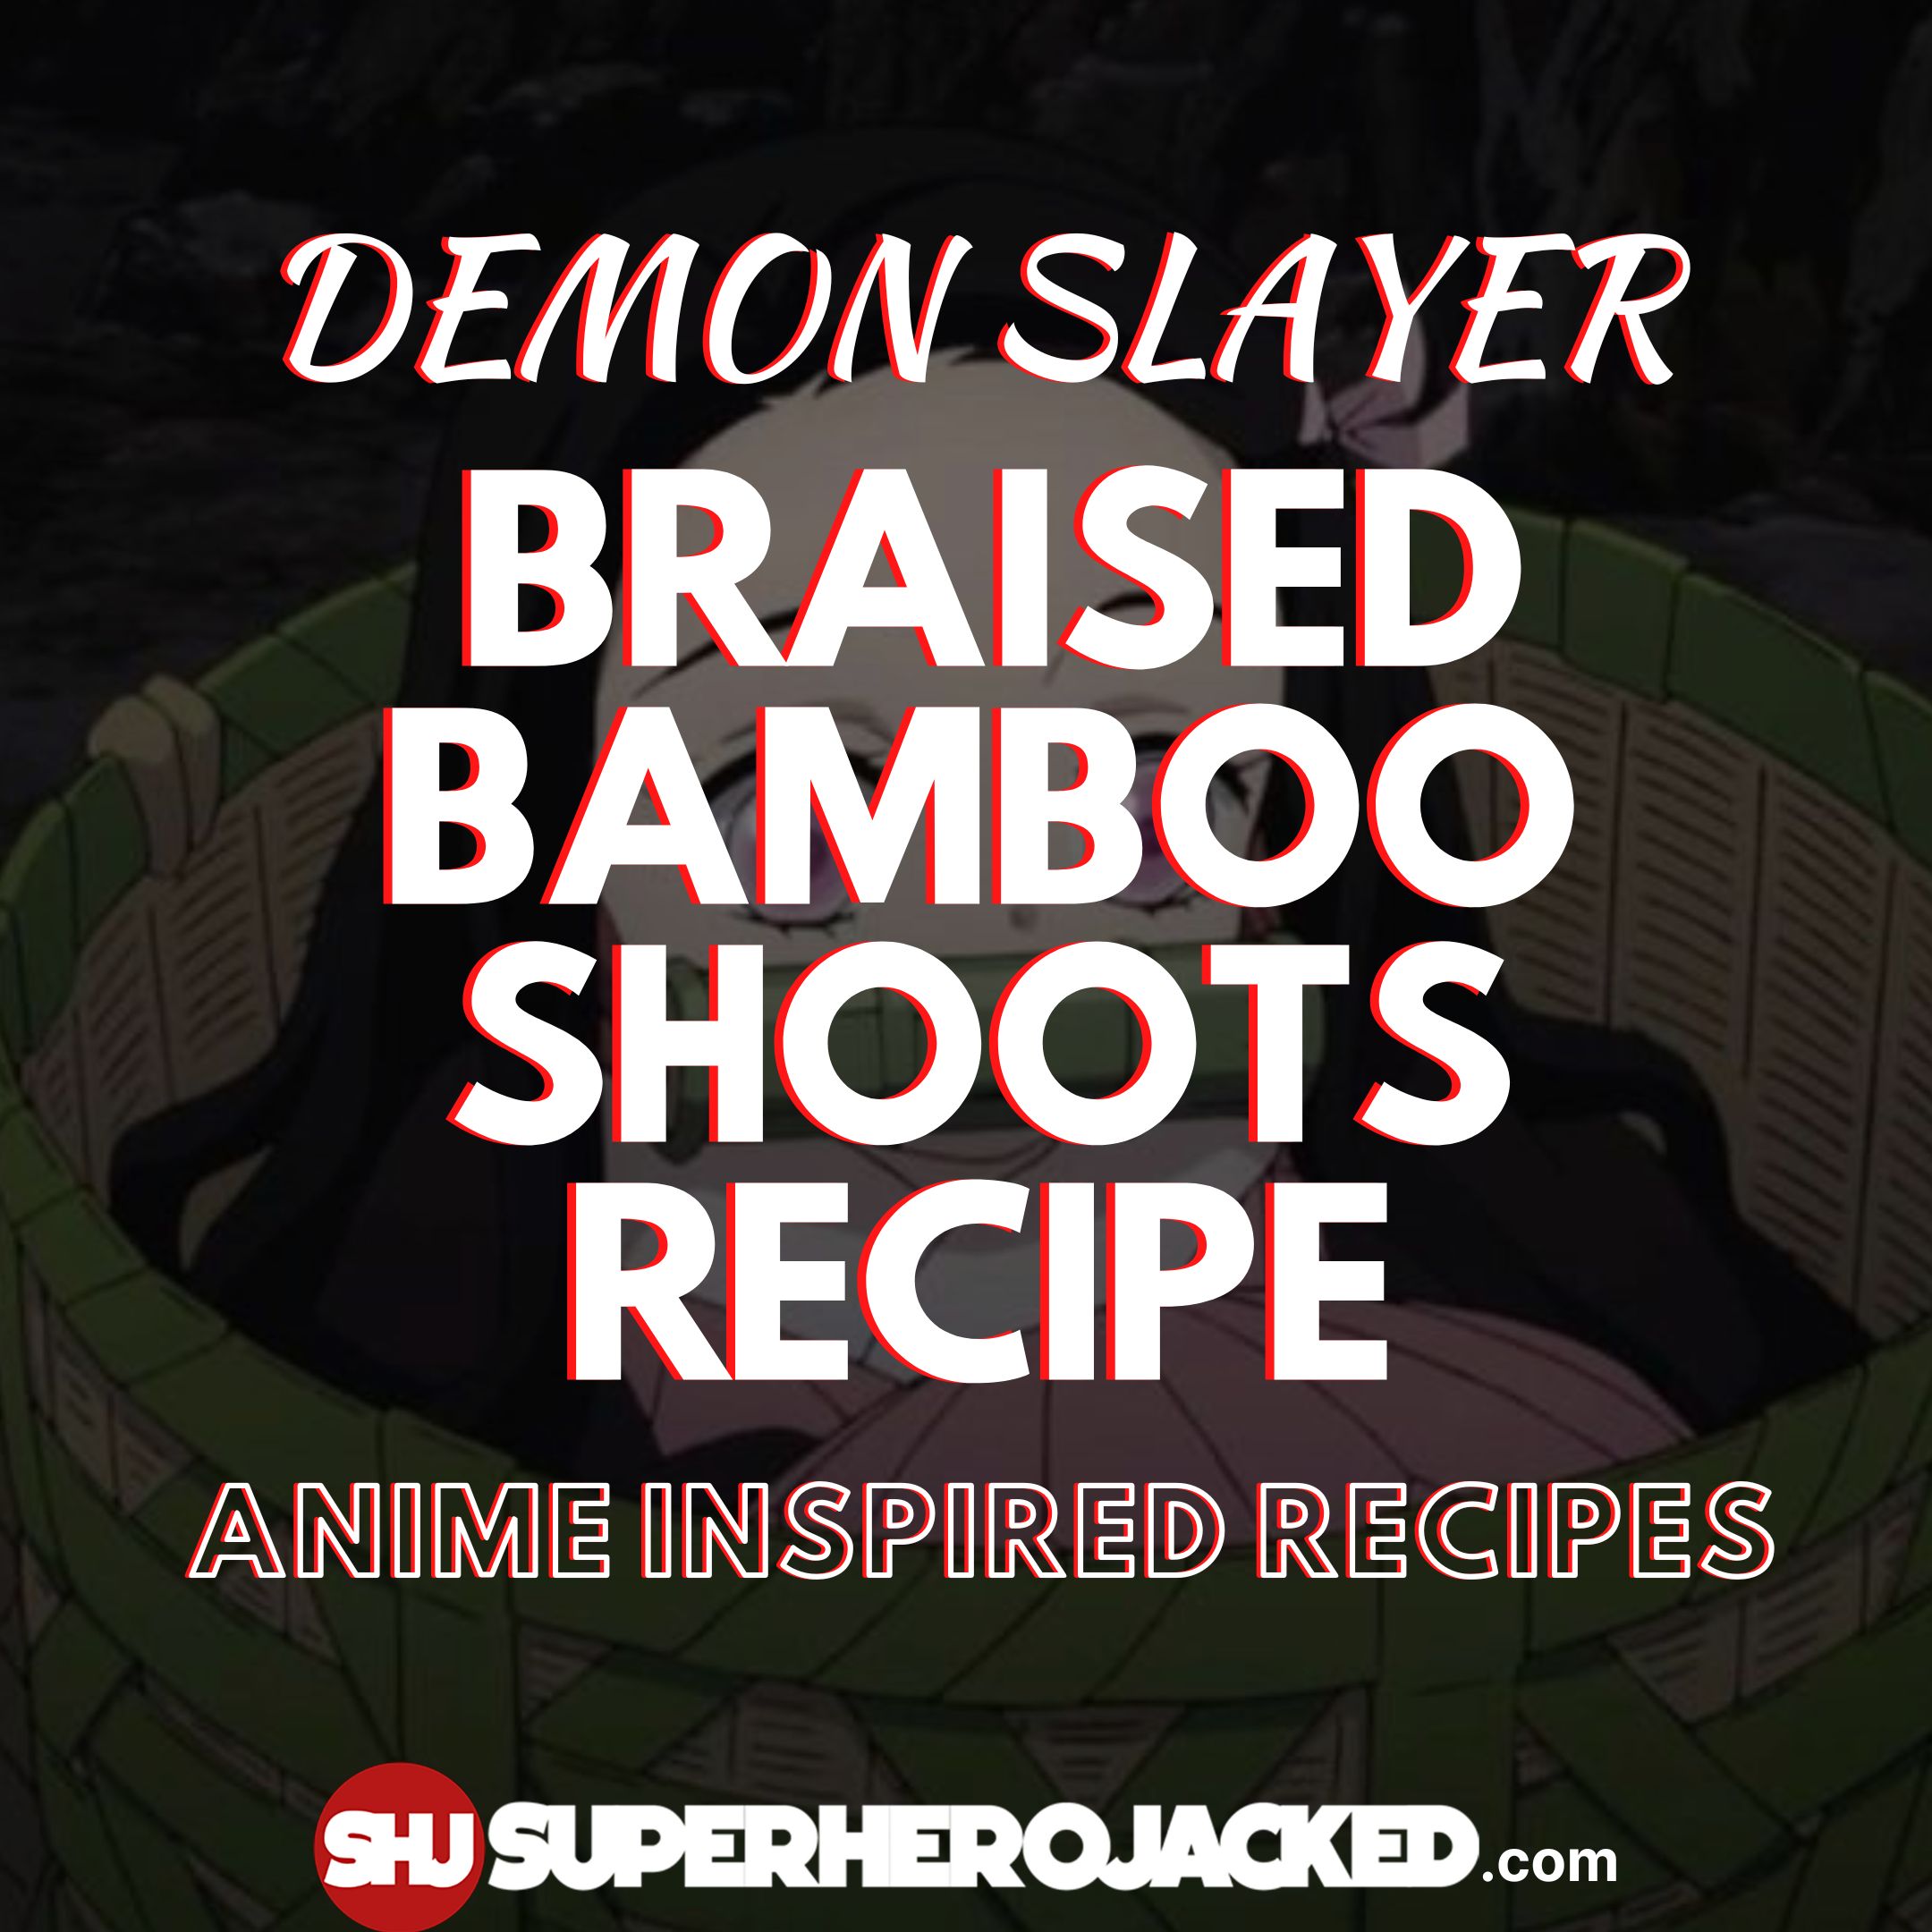 Braised Bamboo Shoot Demon Slayer Recipe